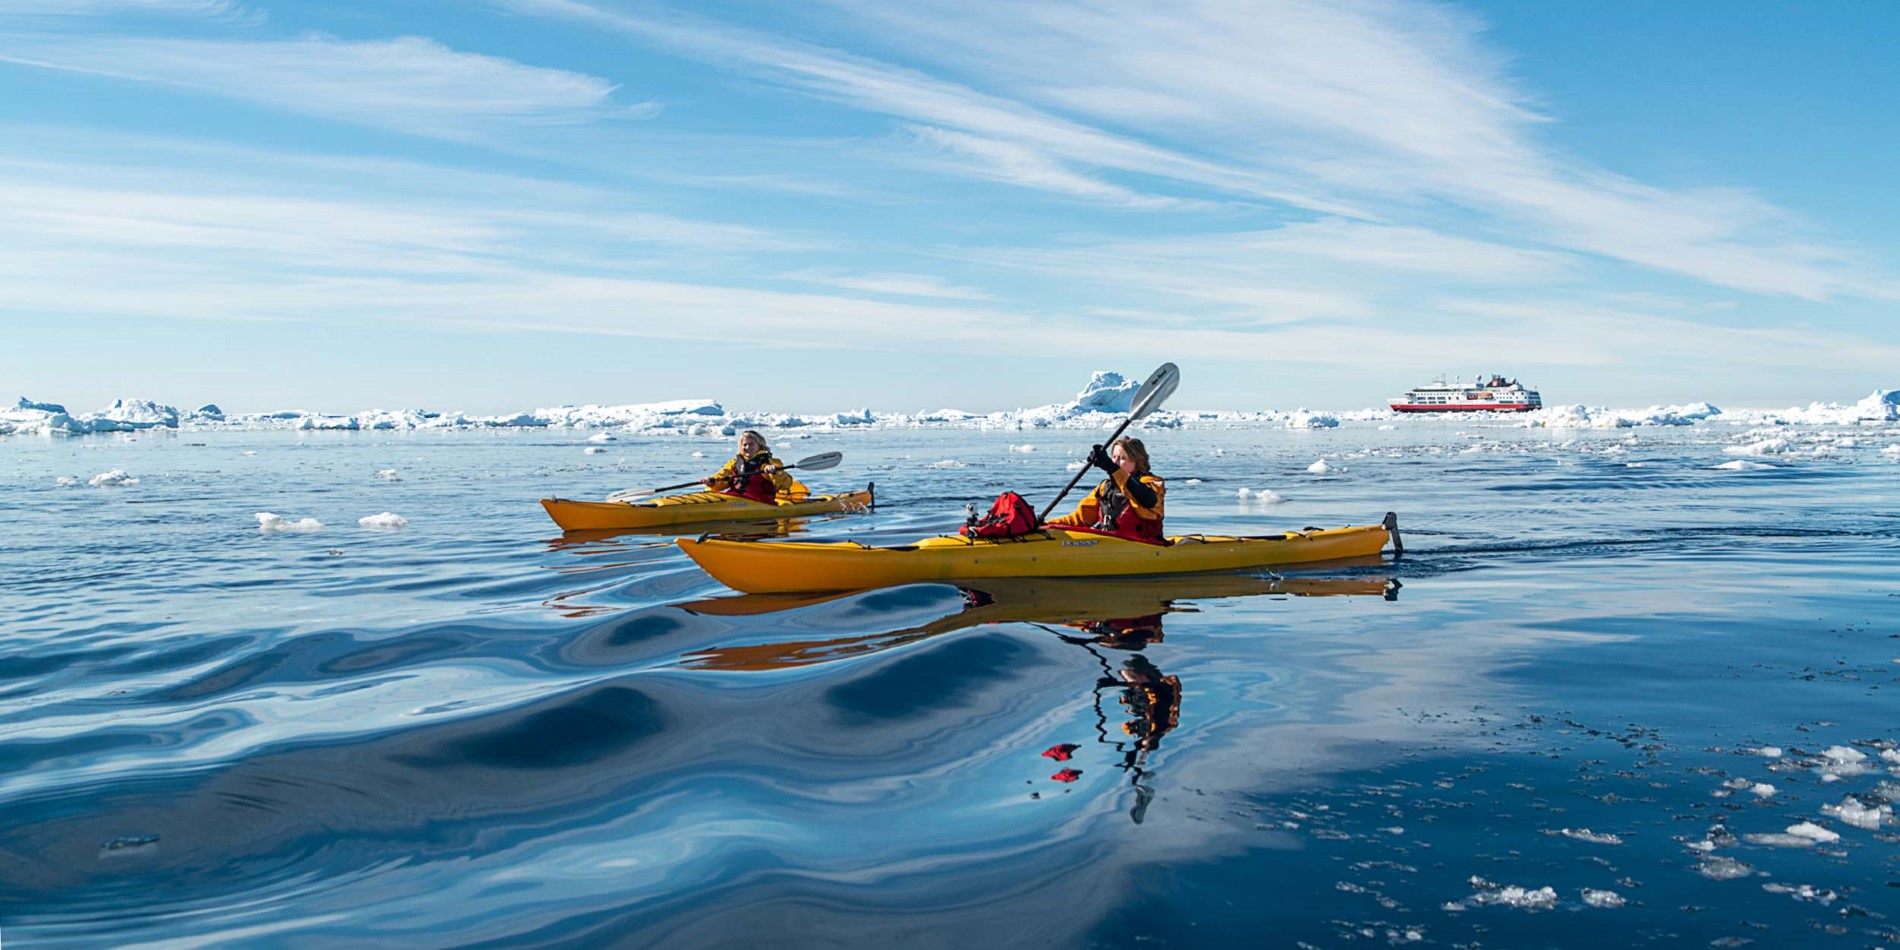 Le kayak est un moyen passionnant d'explorer les eaux polaires